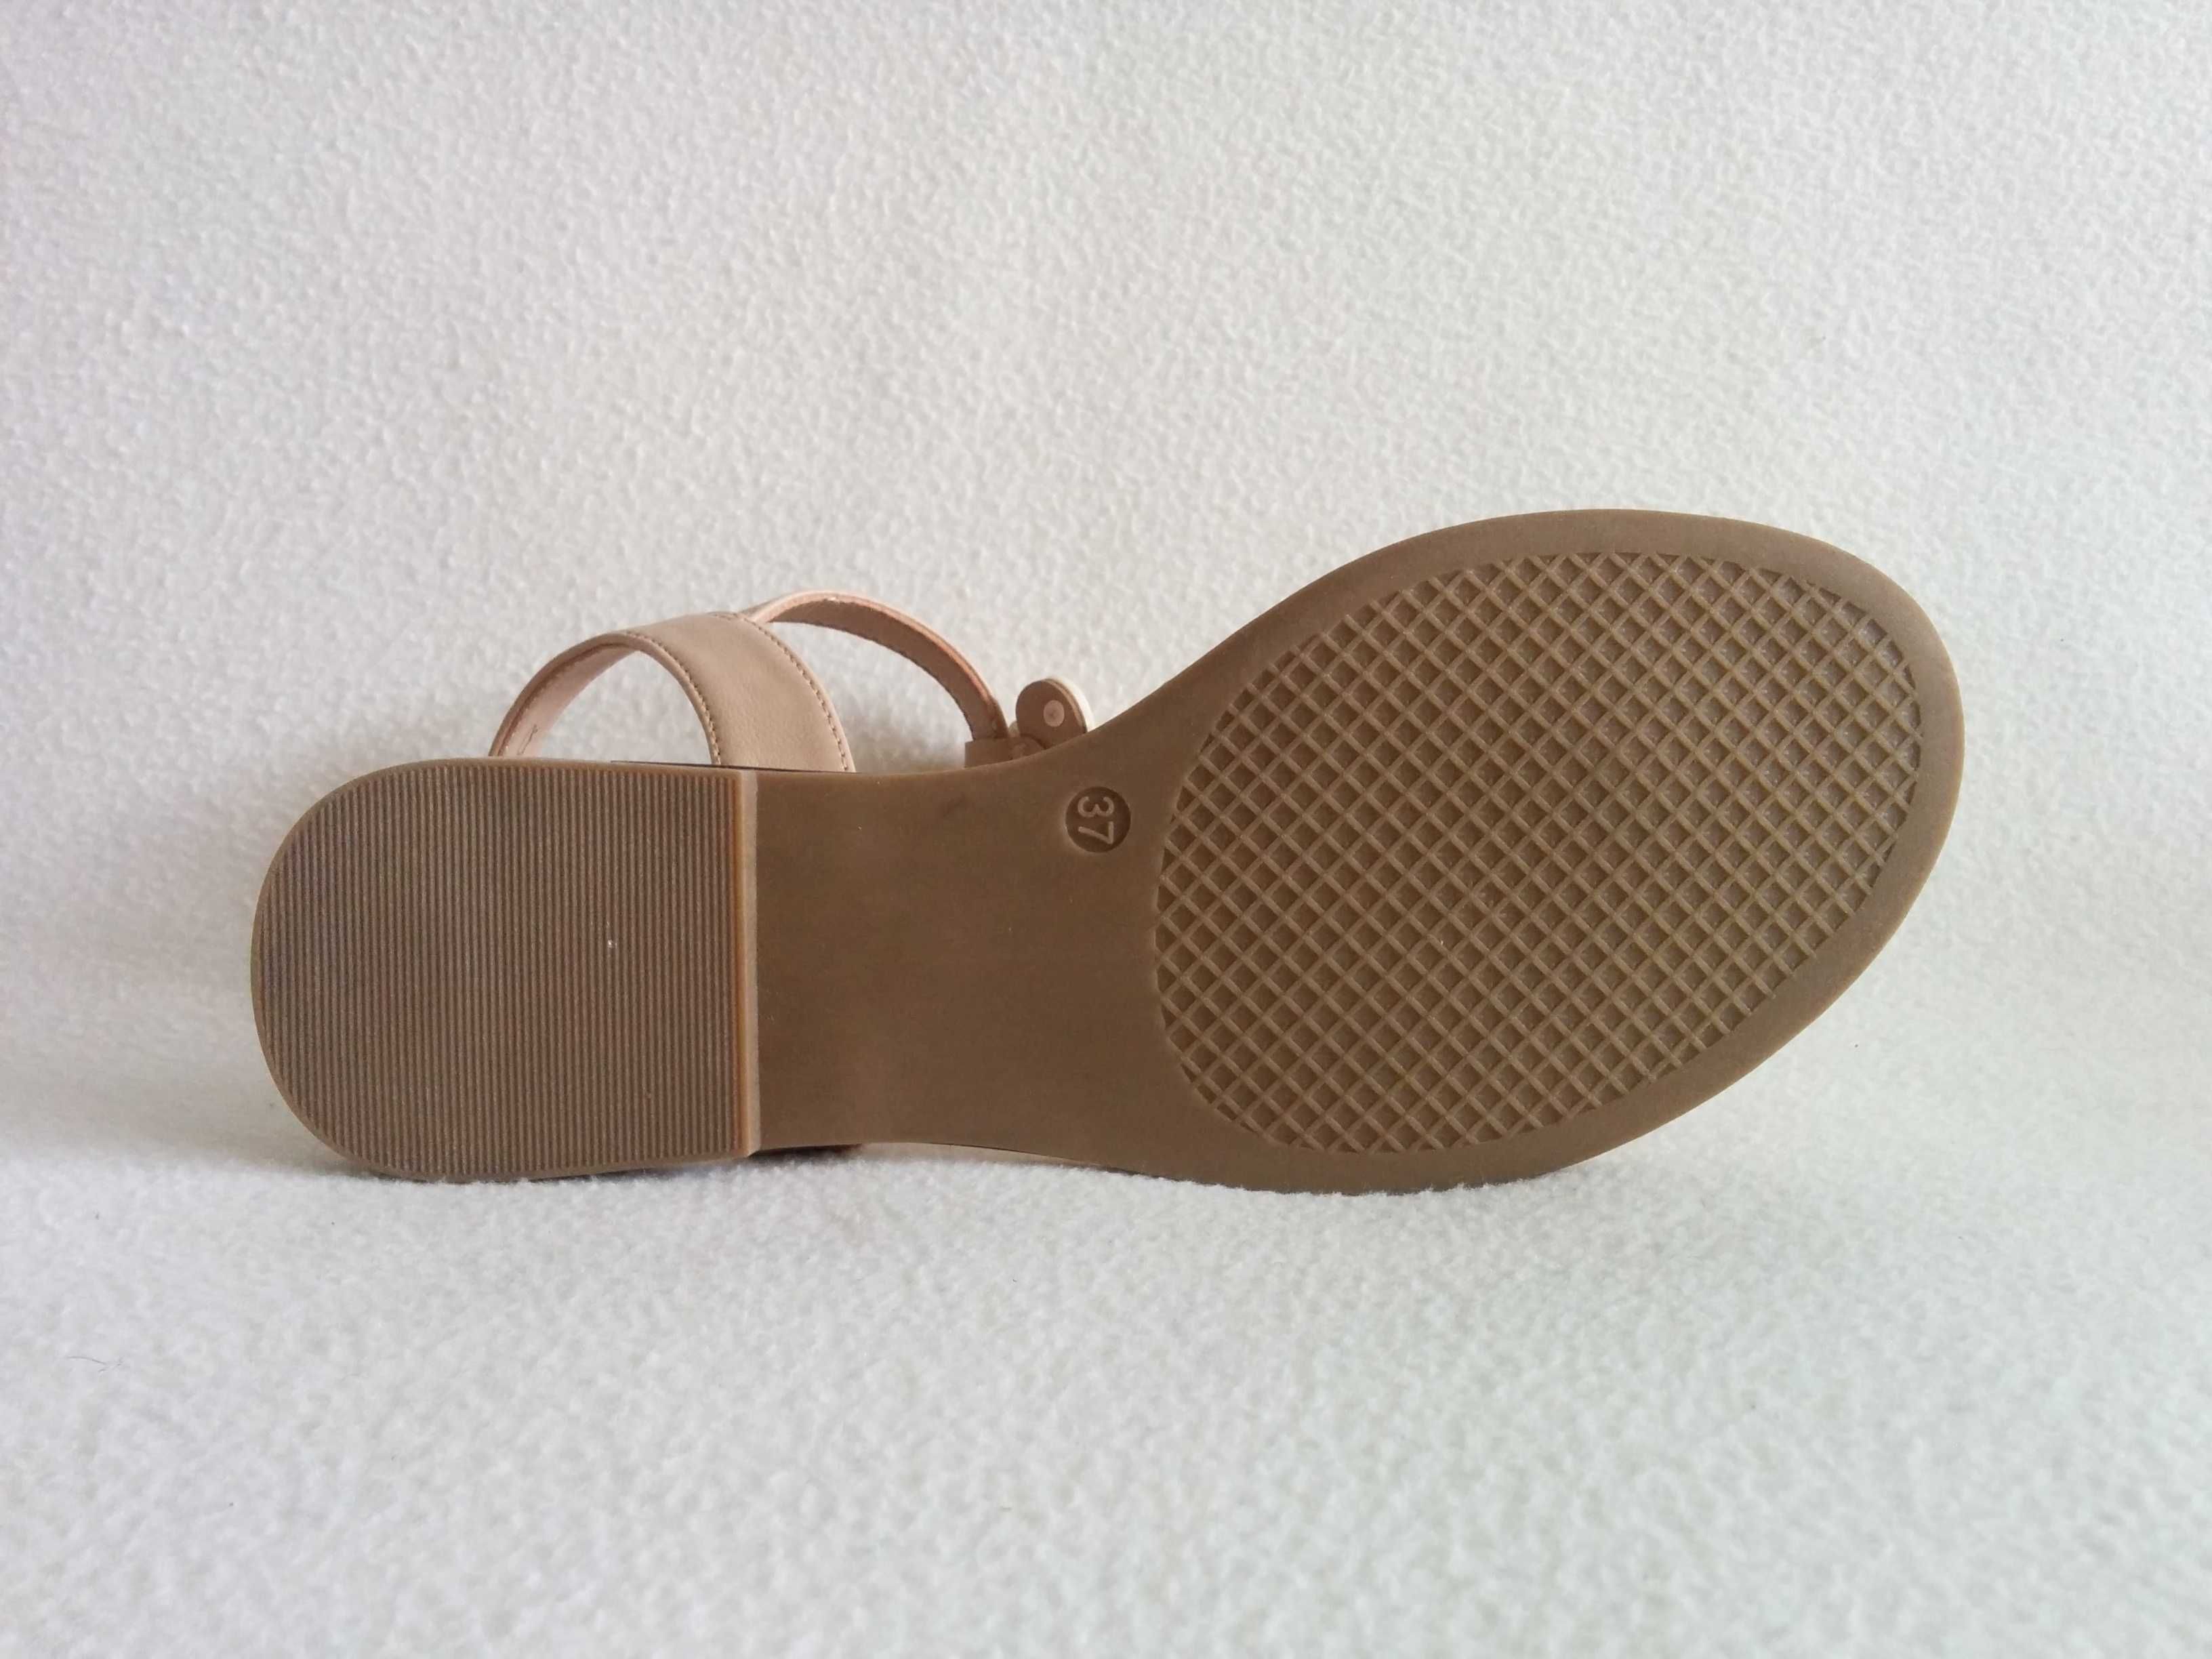 NOWE sandałki z muszelkami - sandały - japonki - damskie letnie buty